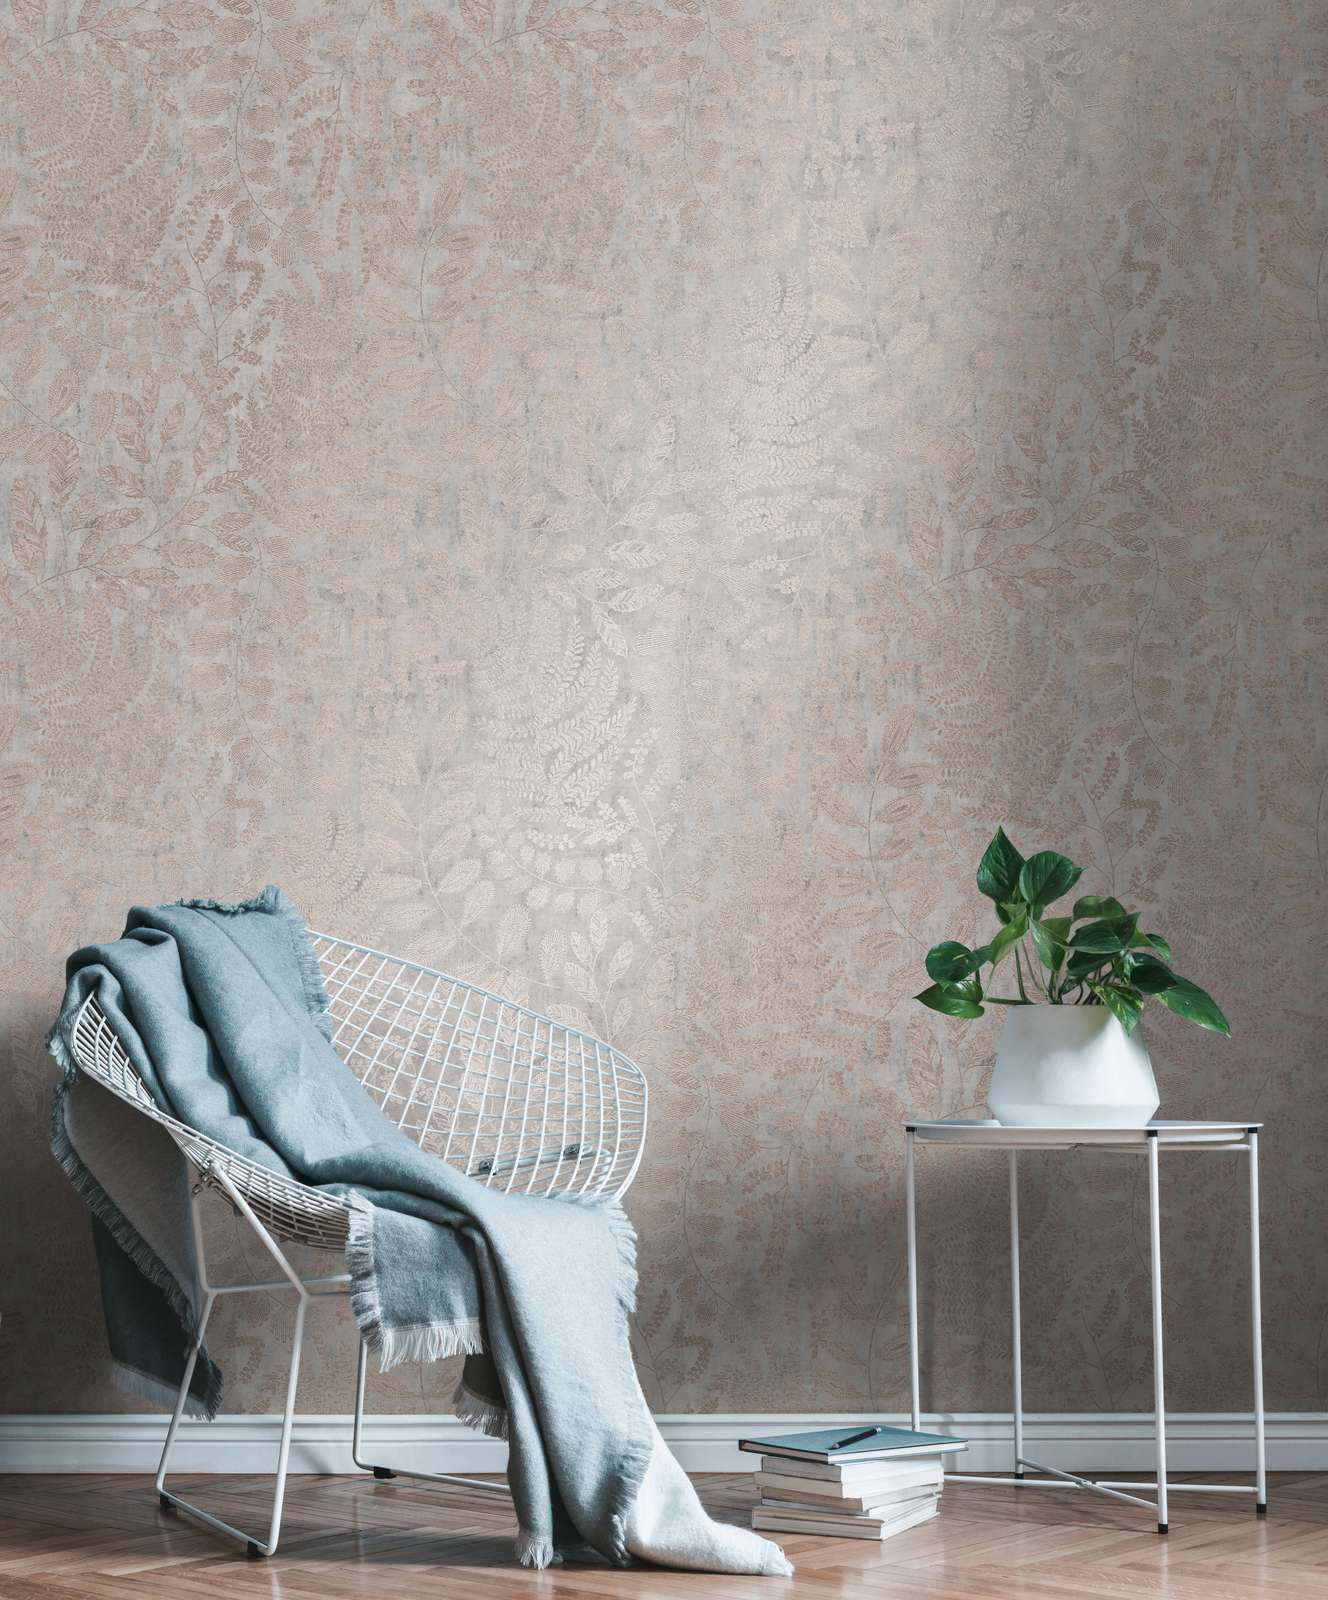             Metallic behangblad patroon in skandi stijl - grijs, metallic
        